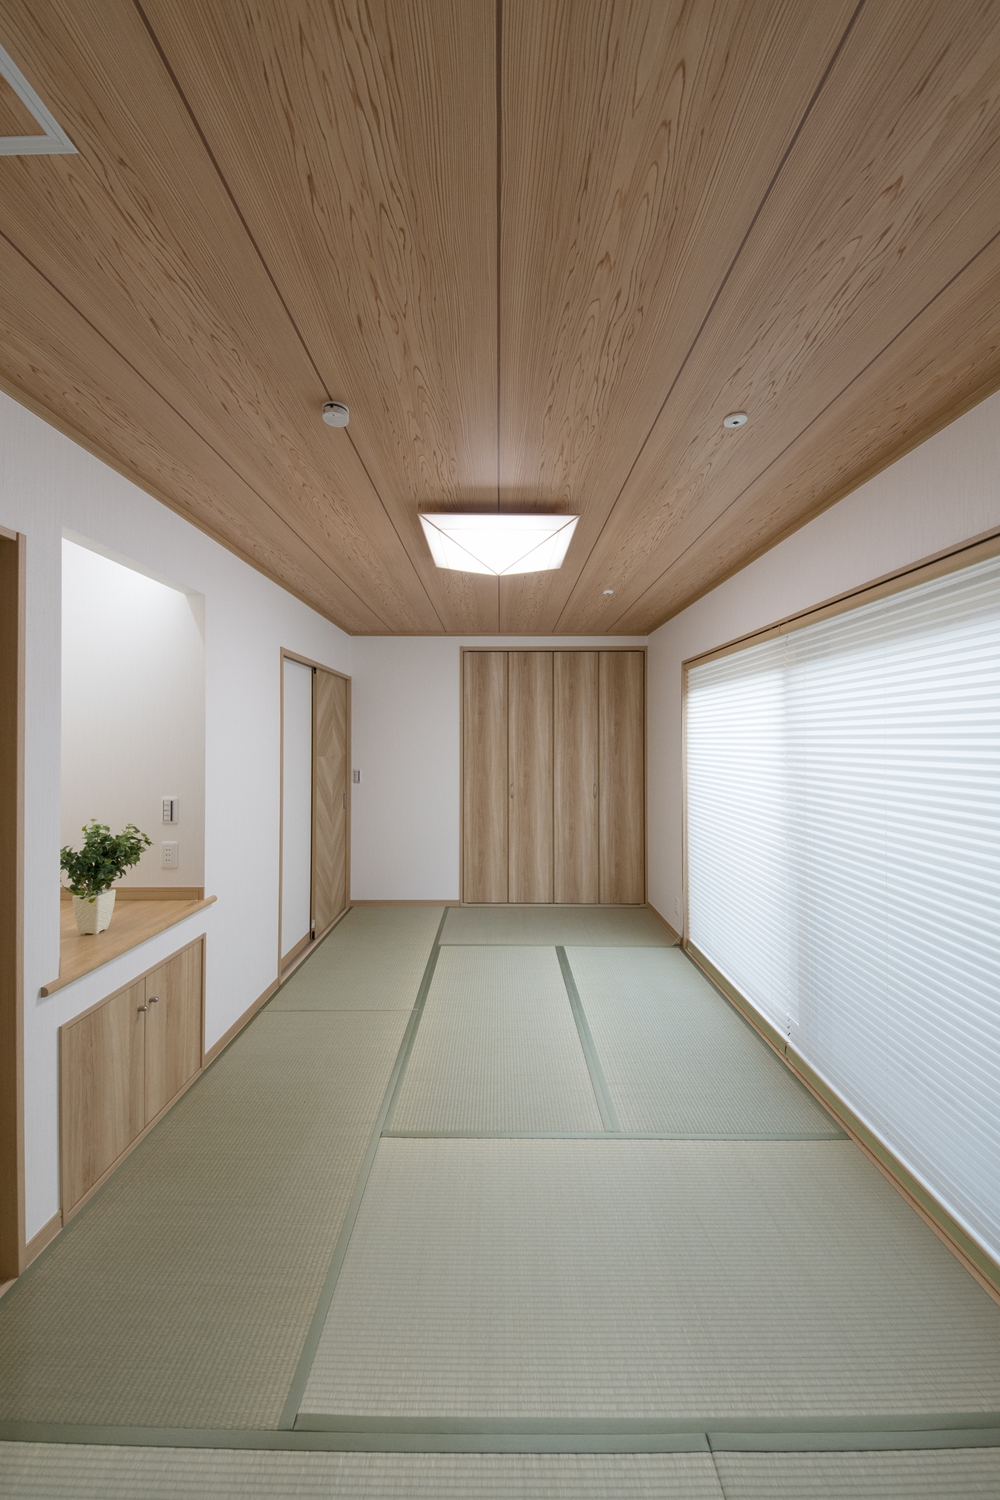 1F畳敷き洋室(親世帯)/畳のさわやかなグリーンが空間を彩ります。仏間を設え和室の一角に心落ち着く空間ができました。